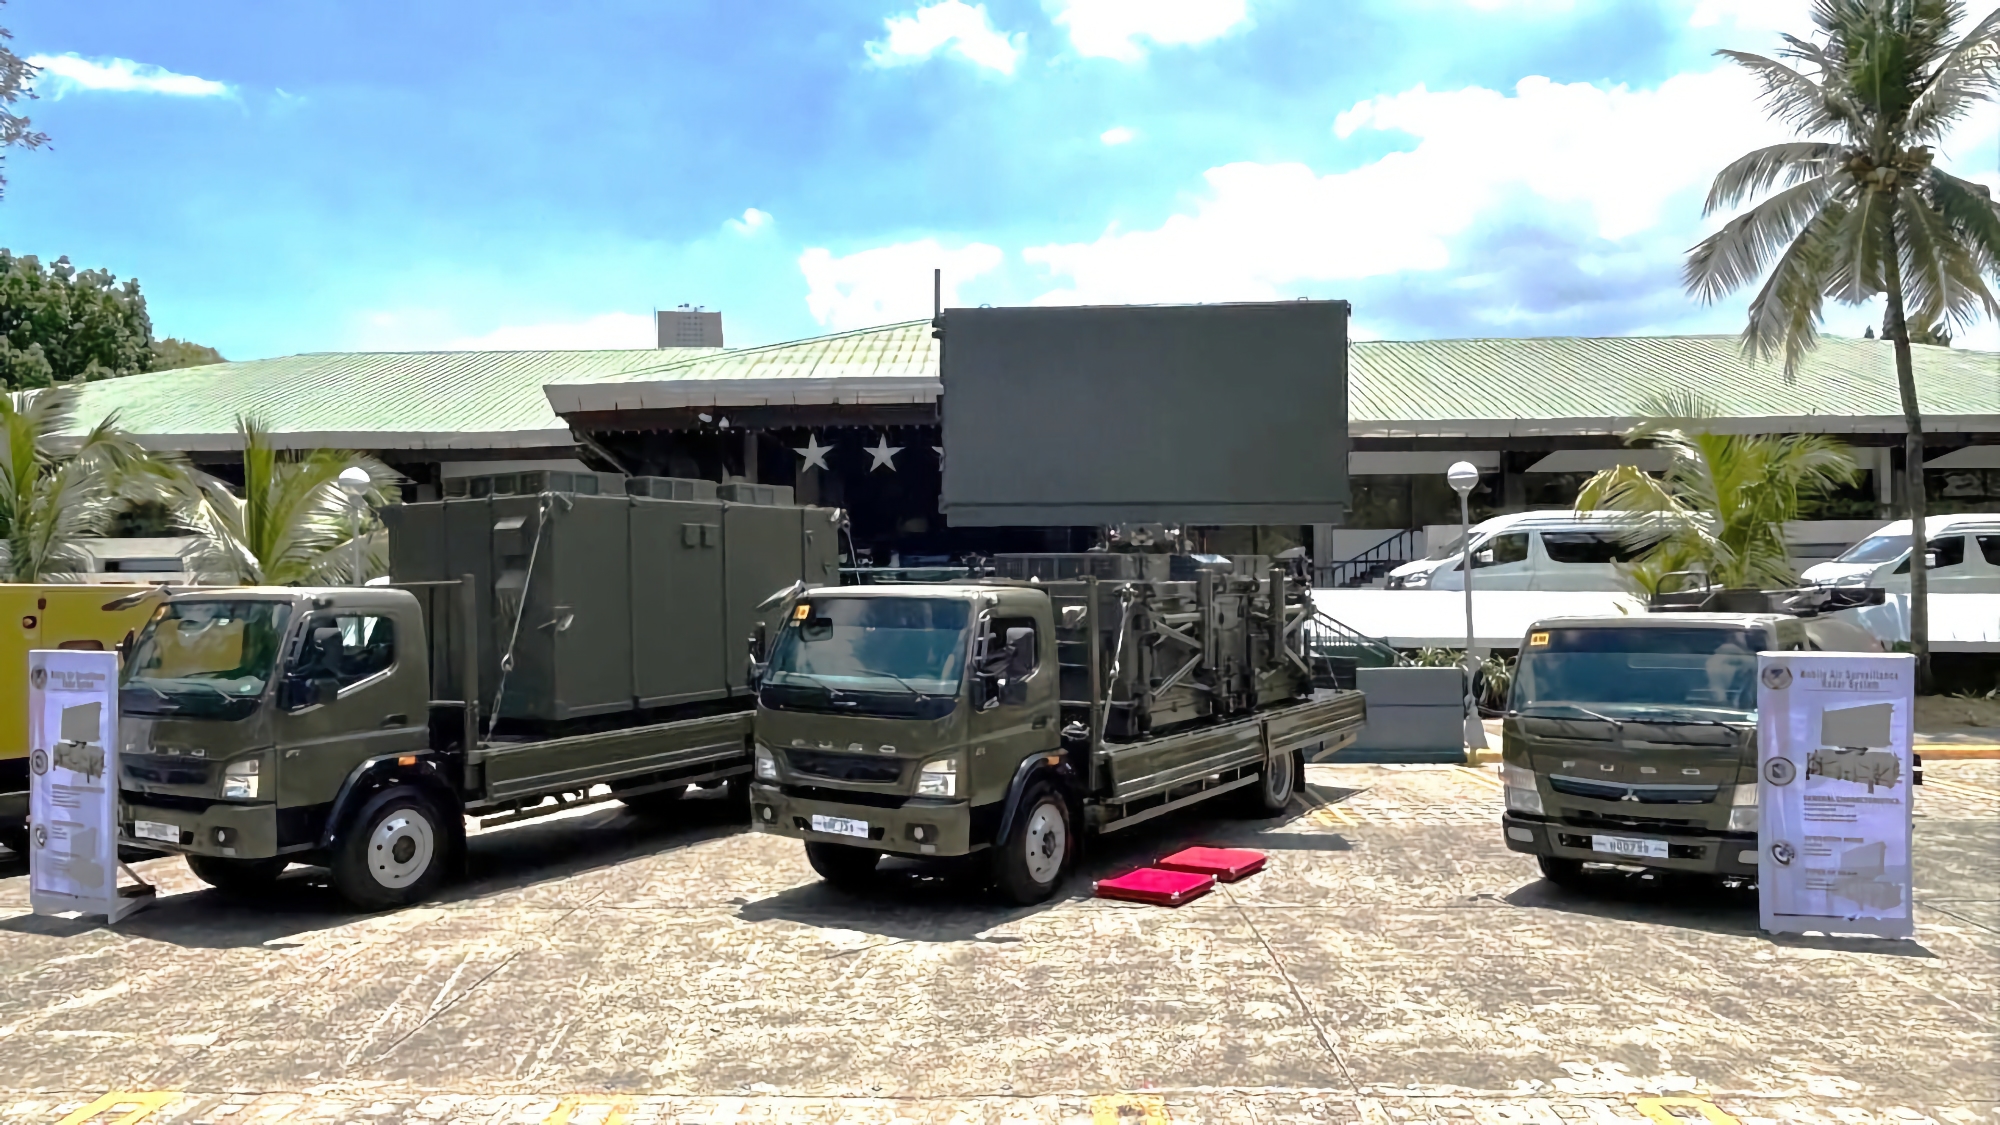 Япония передала Филиппинам радарную стацию раннего обнаружения TPS-P14ME, она создана на базе грузовика Mitsubishi Fuso Super Great